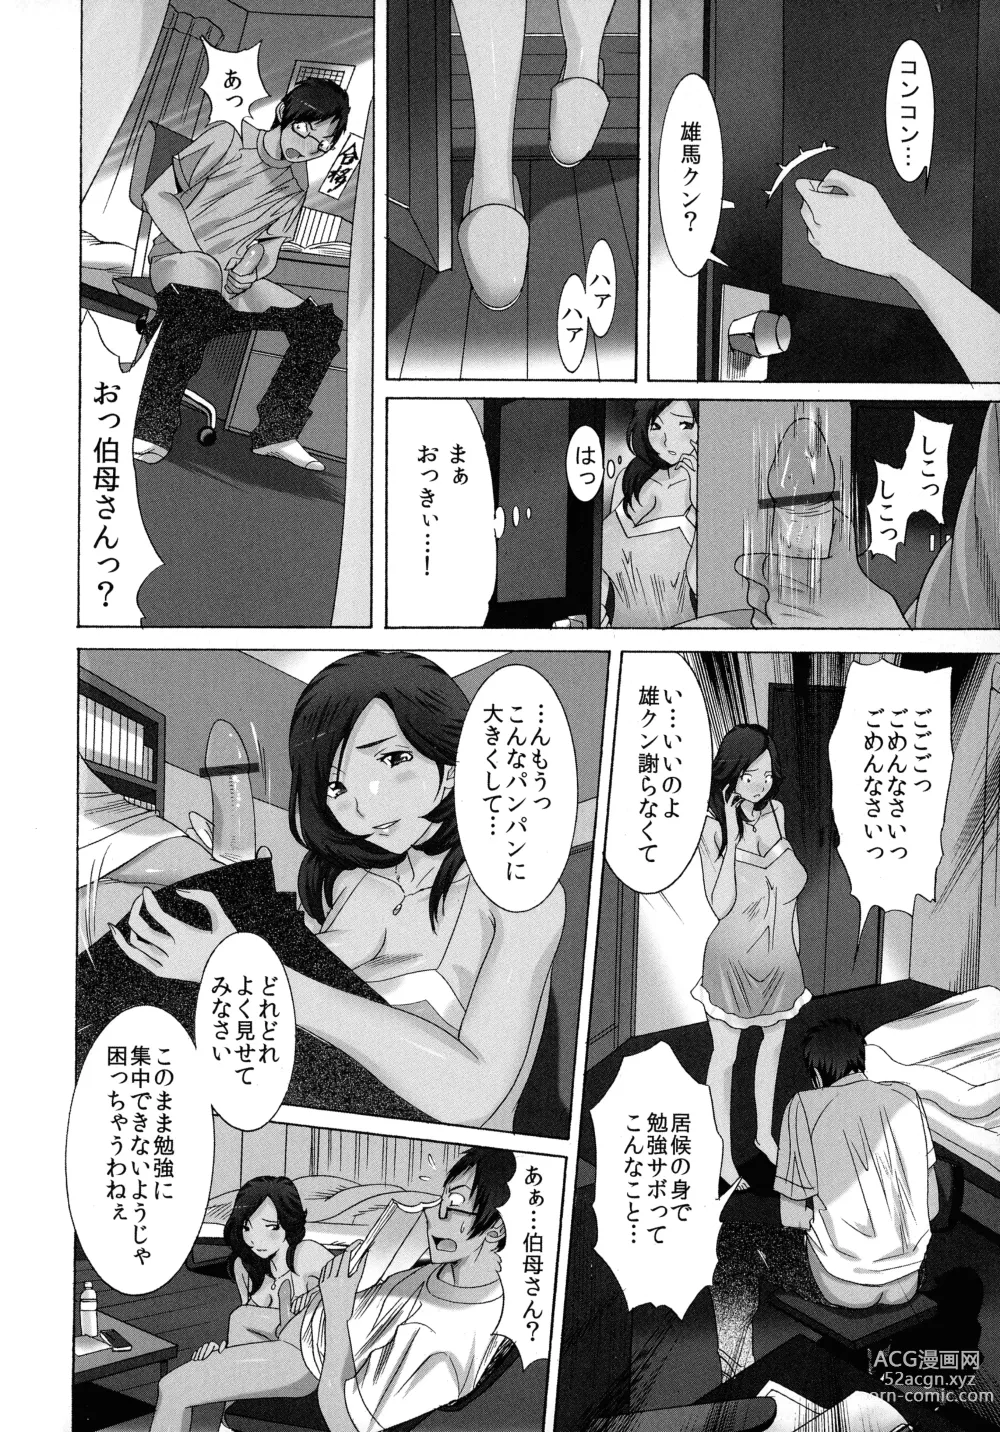 Page 12 of manga Okaa-san mo Issho